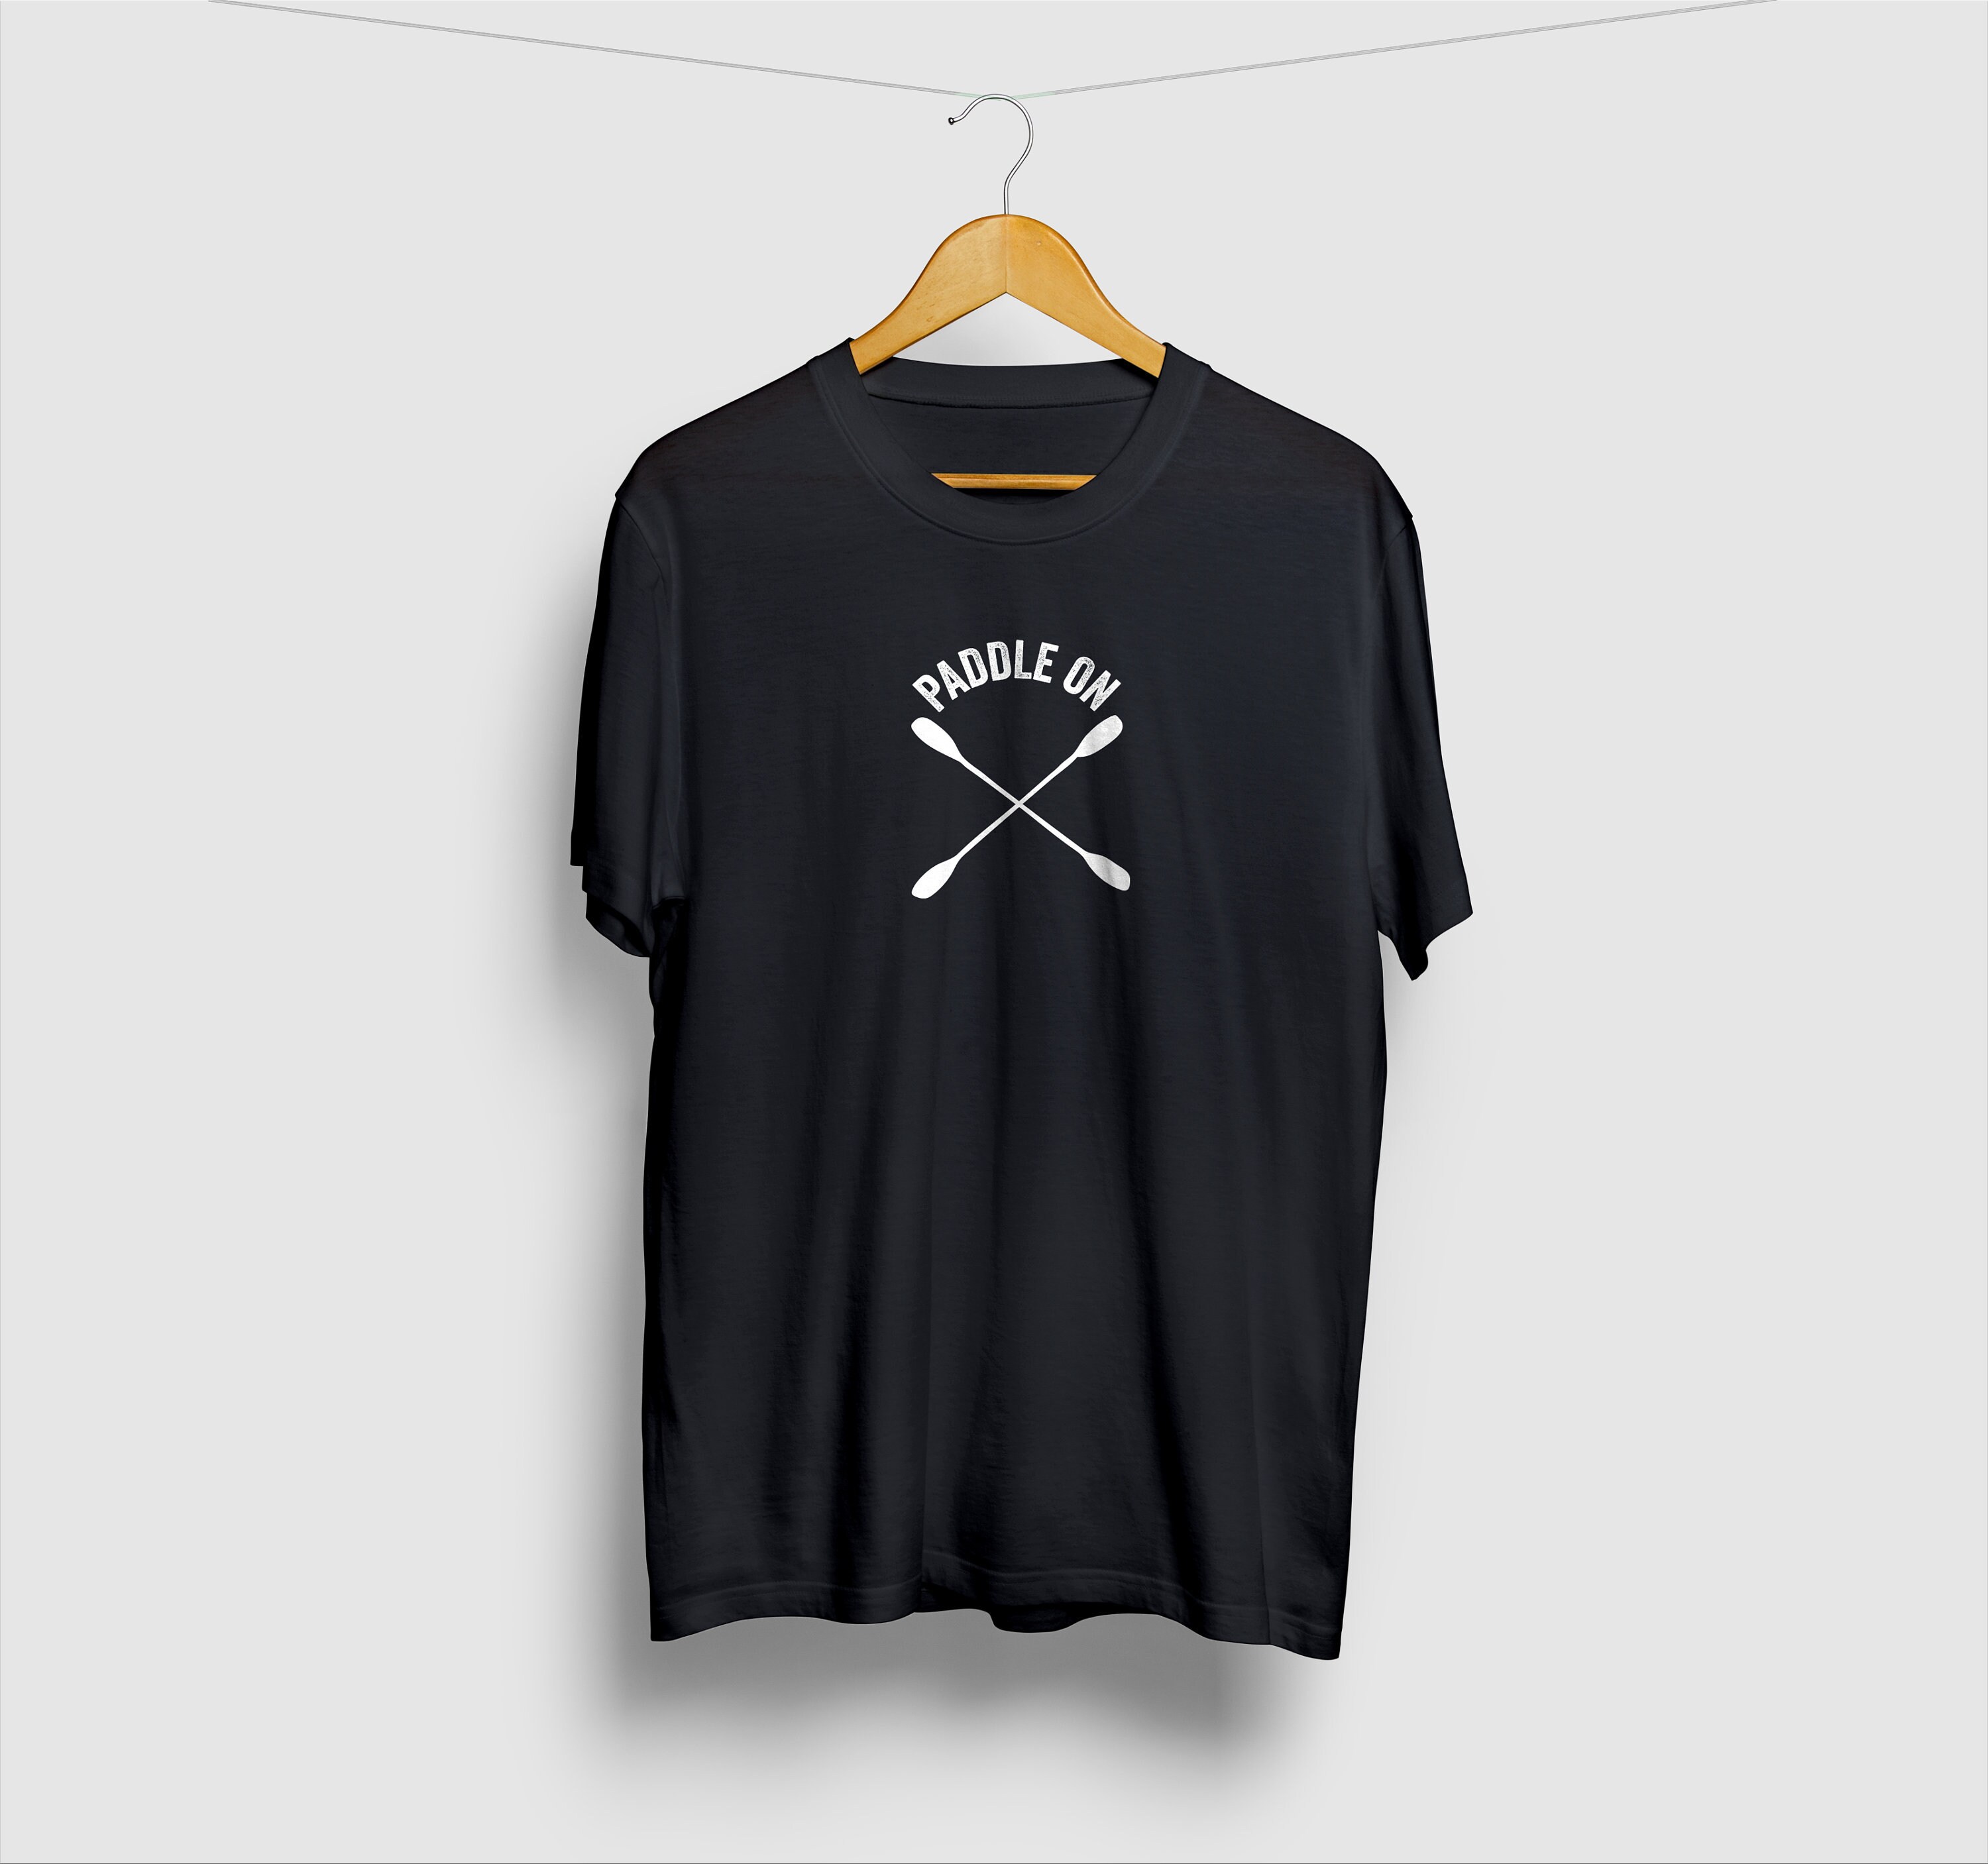 Paddle on T-shirt Kayak Shirt, Kayaking Gift, Canoe Shirt